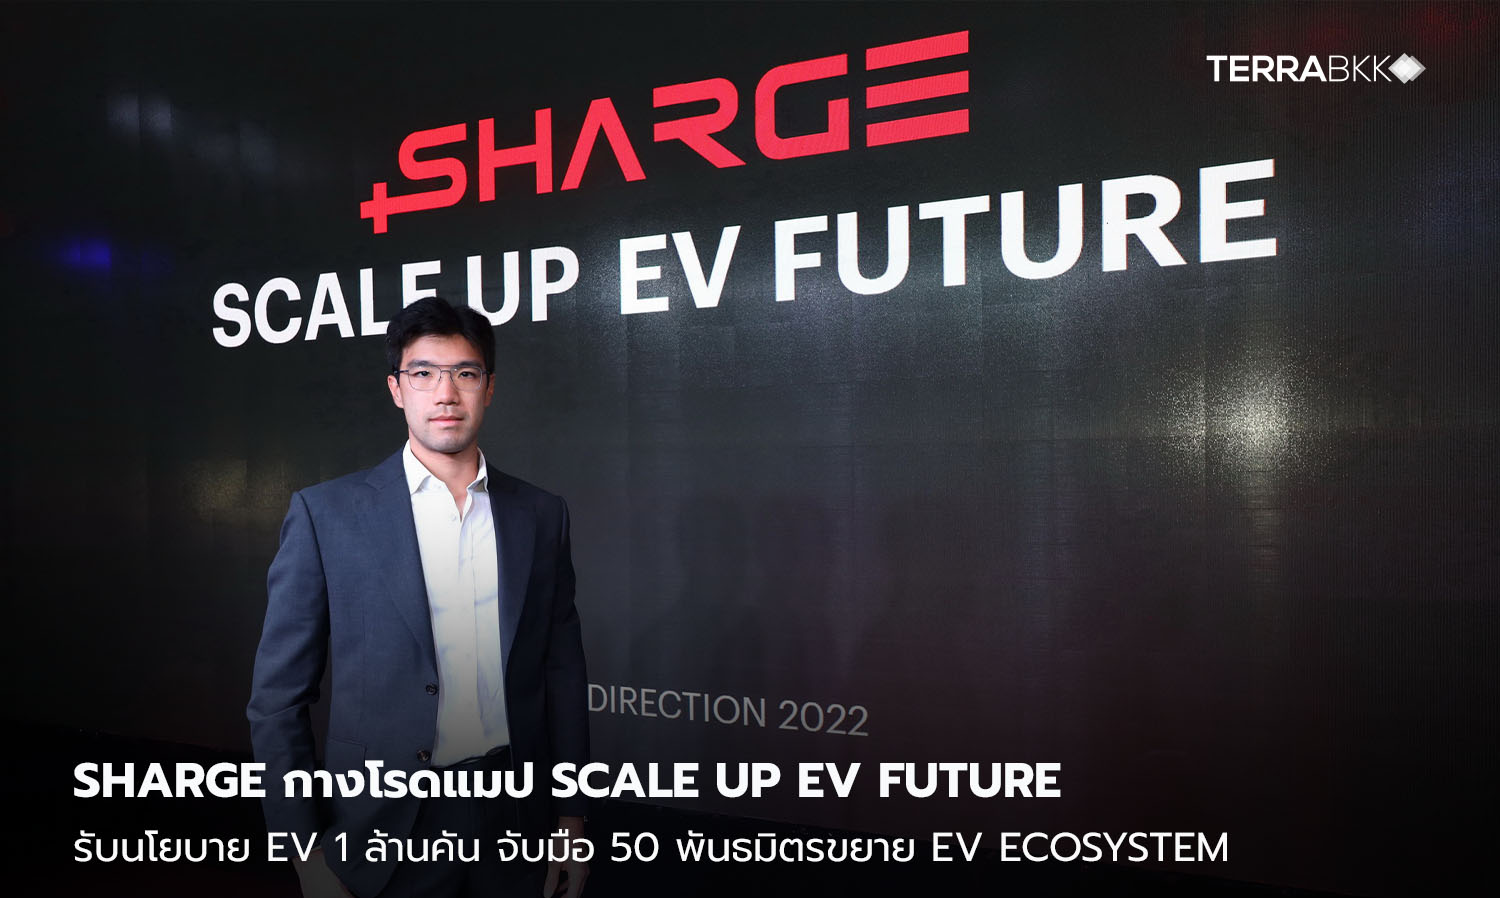  SHARGE กางโรดแมป Scale Up EV Future รับนโยบาย EV 1 ล้านคัน จับมือ 50 พันธมิตรขยาย EV Ecosystem เพิ่มสถานีชาร์จแตะ 600 แห่ง 2,400 หัวชาร์จ